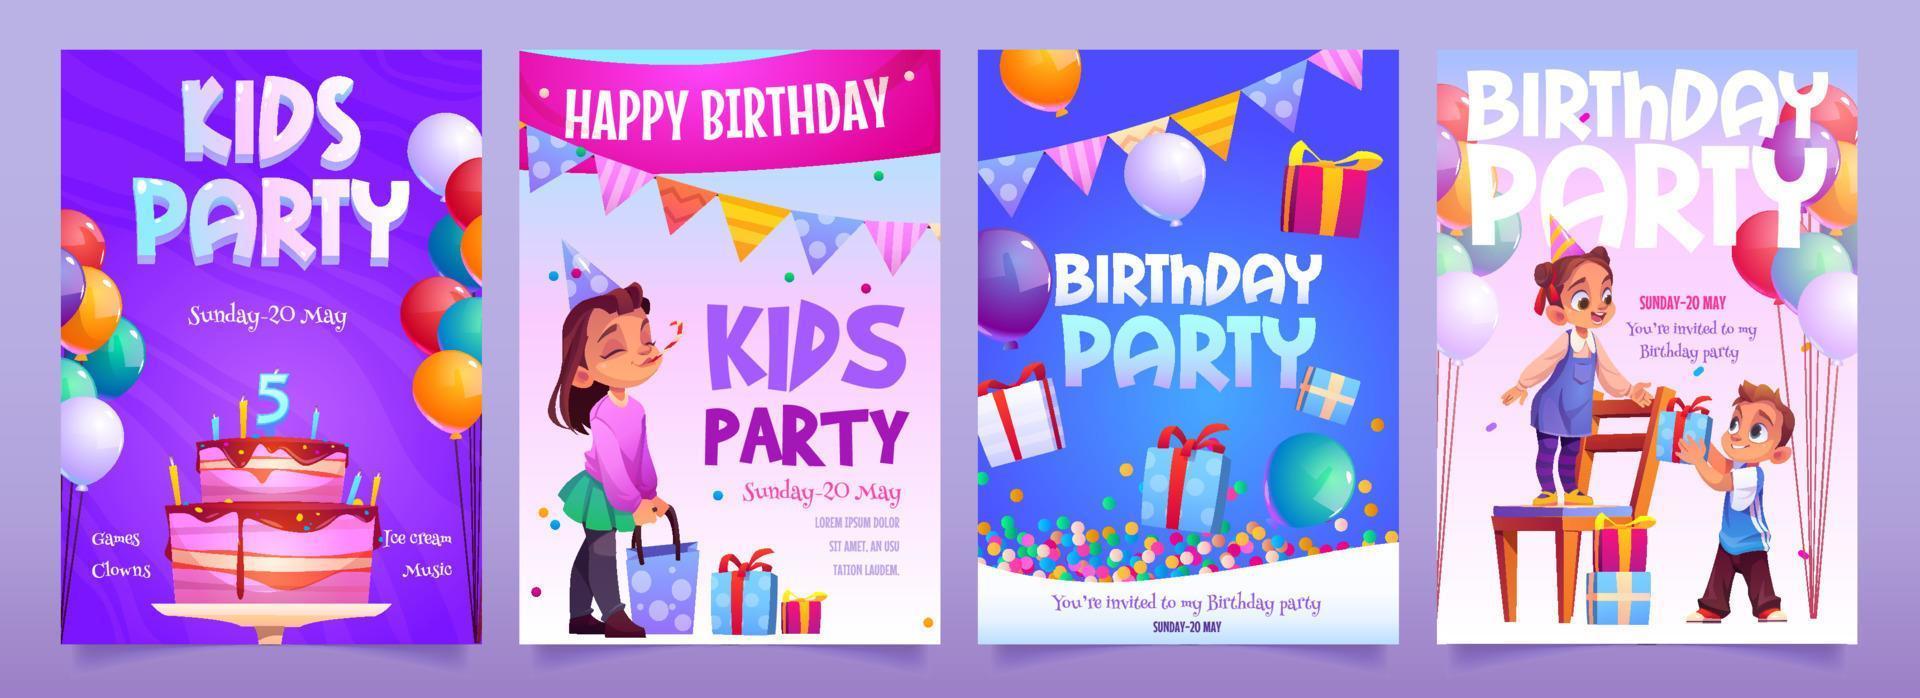 banners de dibujos animados de invitación de fiesta de cumpleaños para niños vector